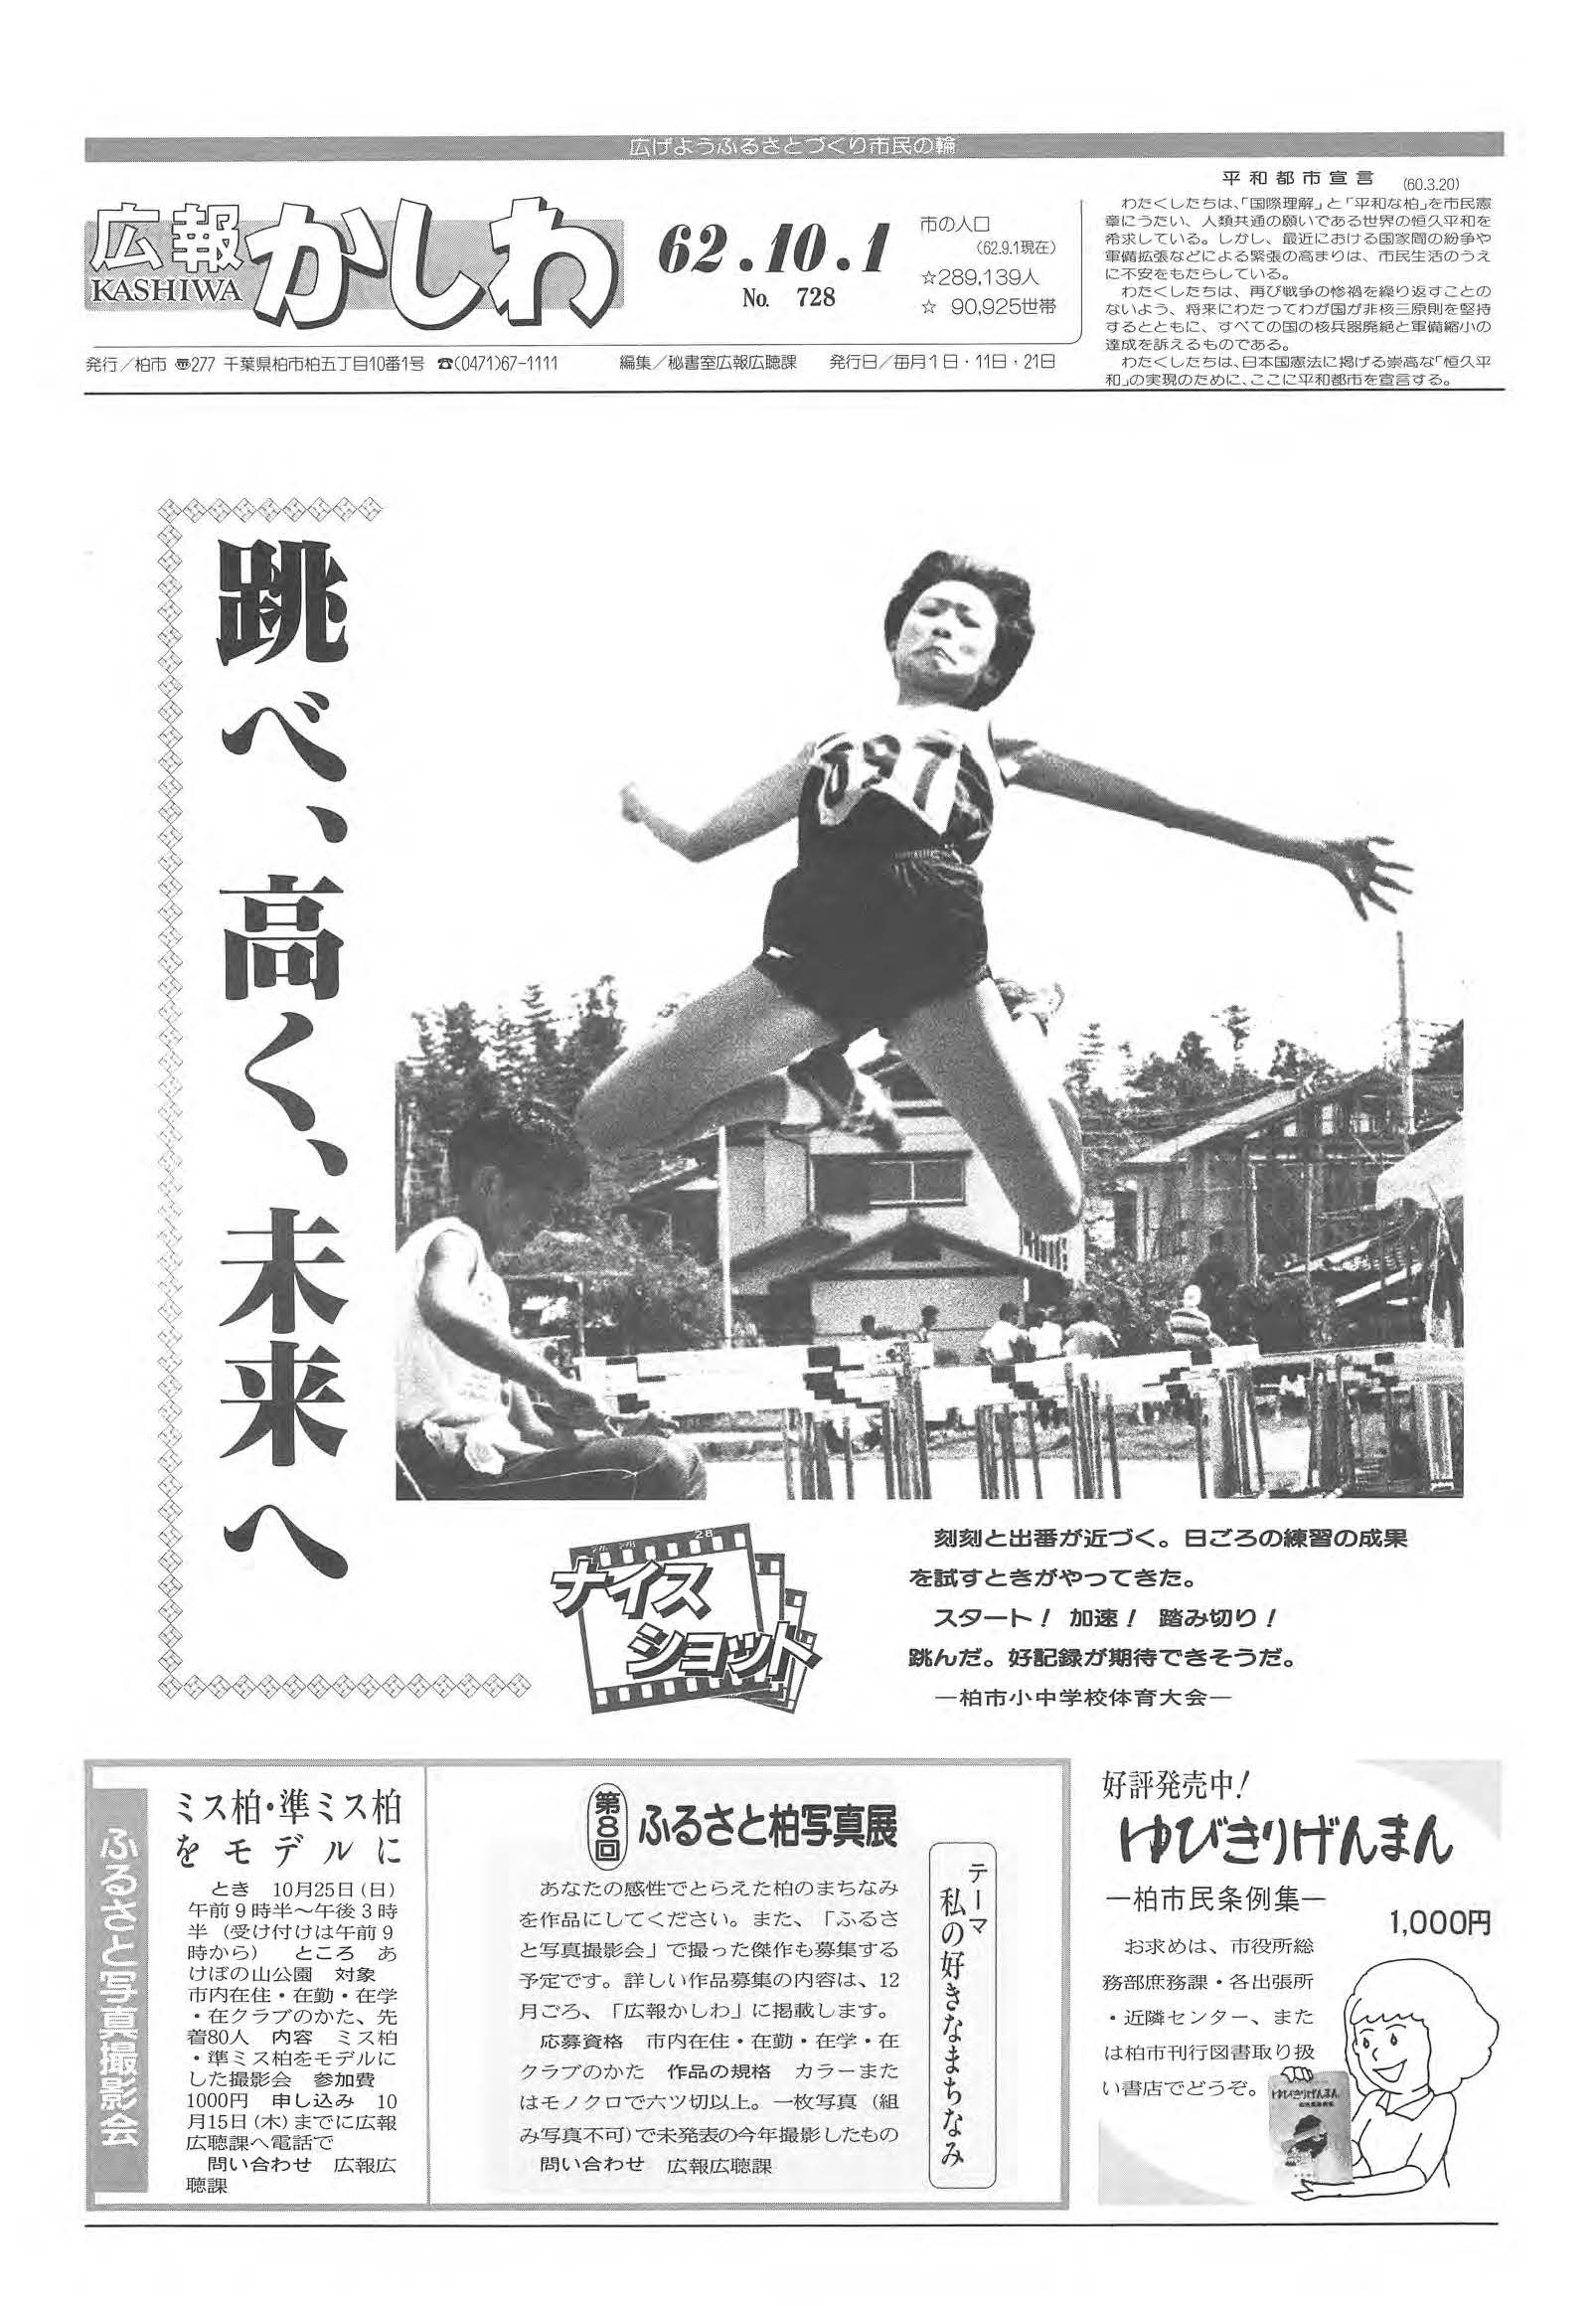 広報かしわ　昭和62年10月1日発行　728号